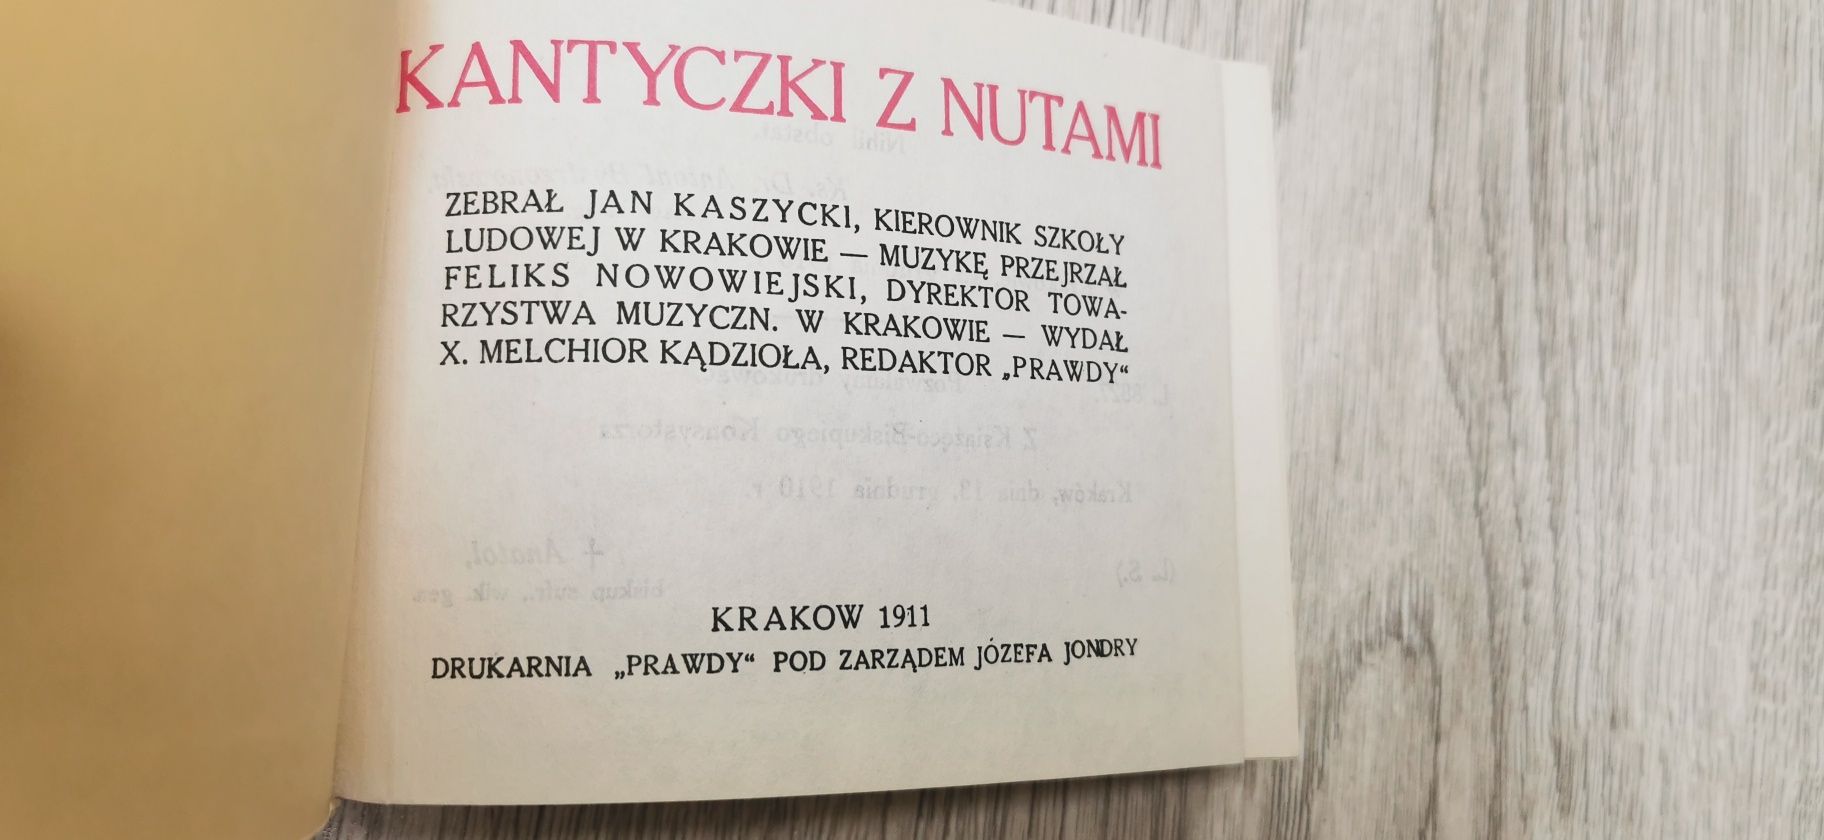 Nuty Kantyczki z nutami reprint 1911 r.
Jan Kaszycki